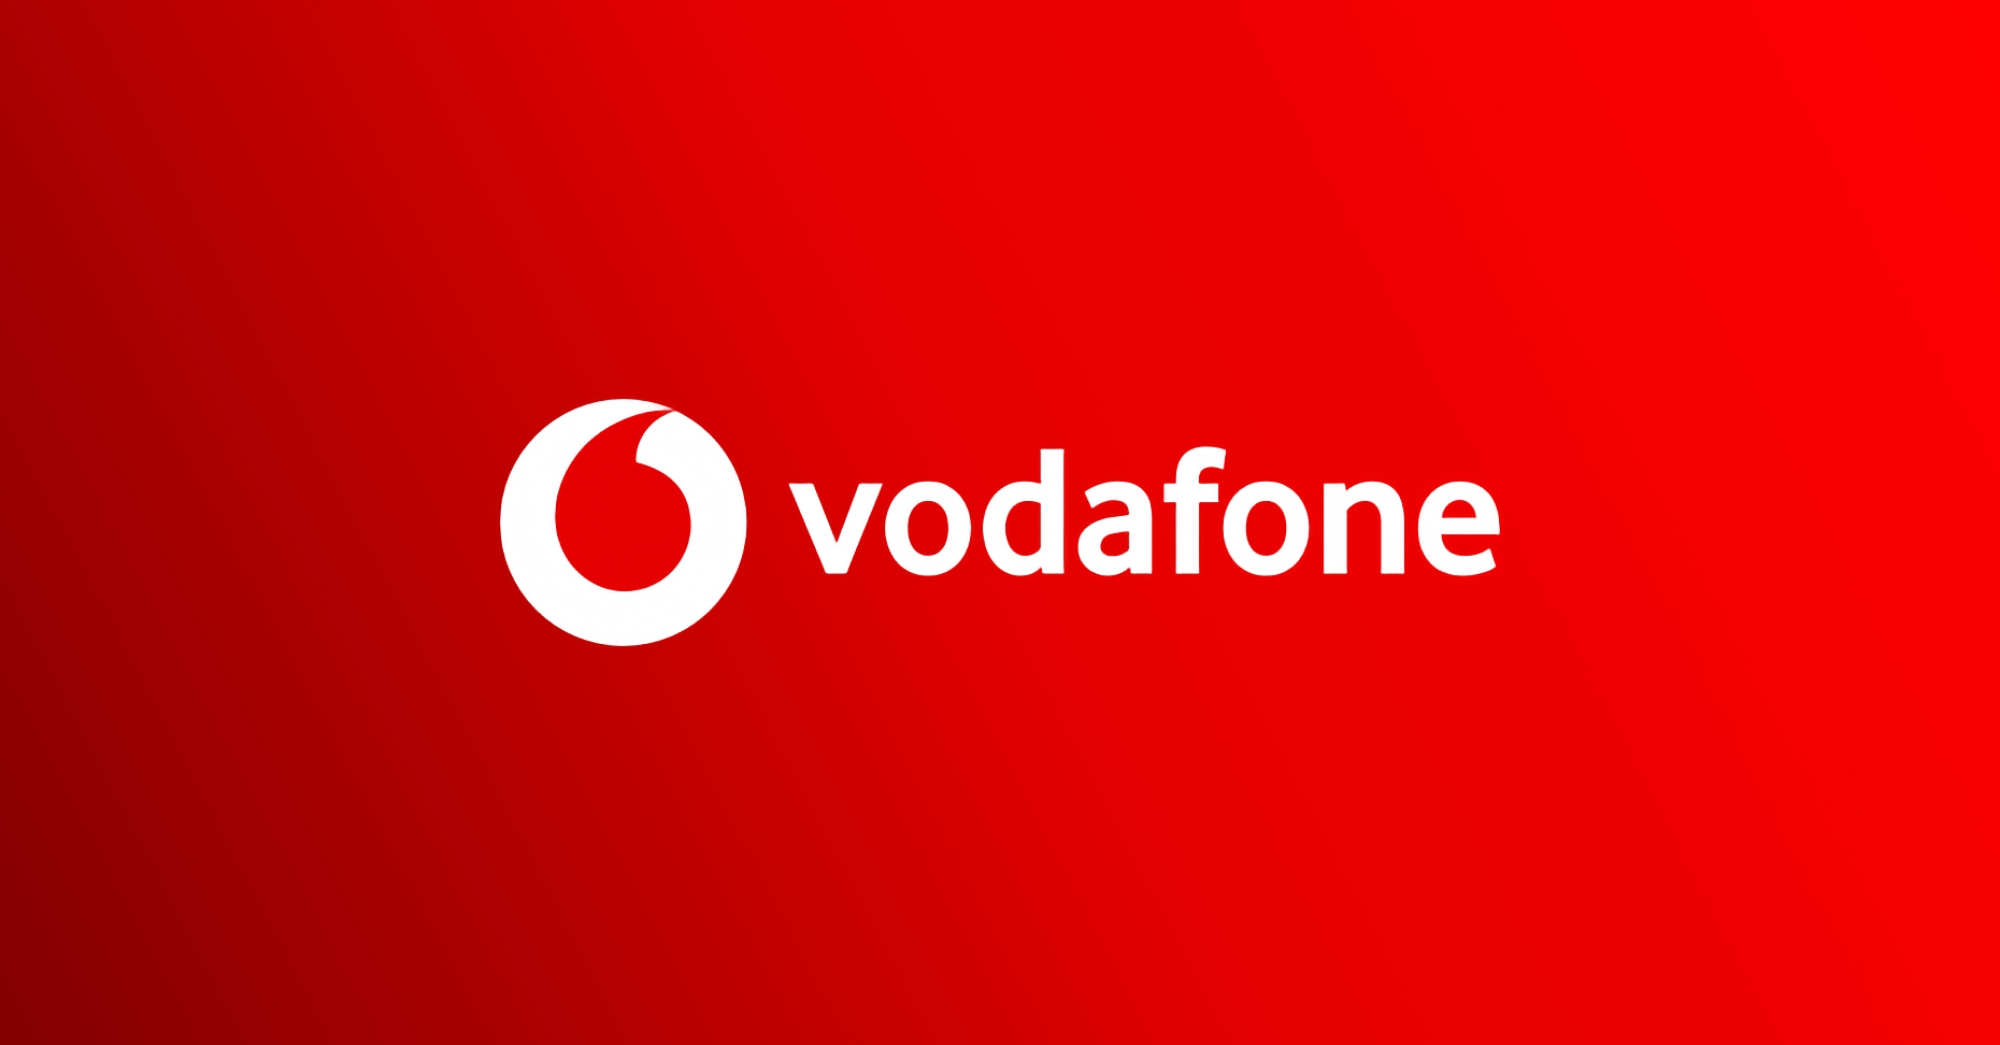 Les clients de Vodafone peuvent faire don de leurs bonus pour aider l'armée ukrainienne